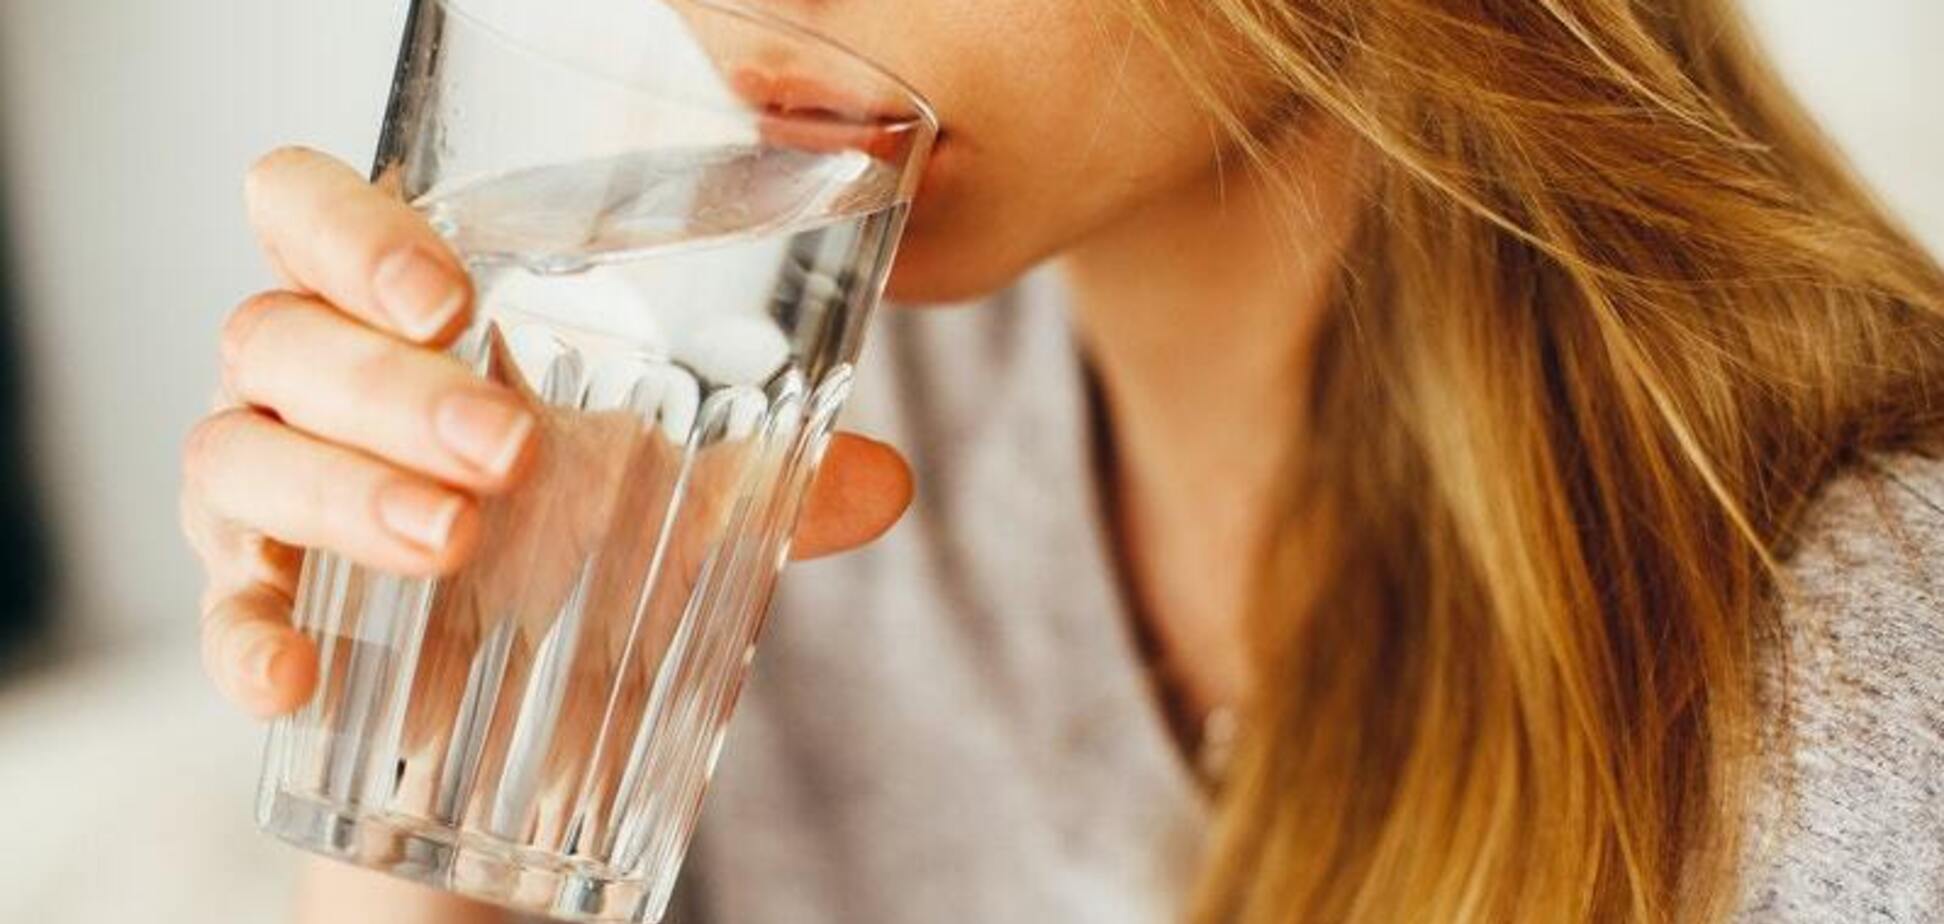 Зачем пить воду при похудении: диетолог объяснила важные нюансы